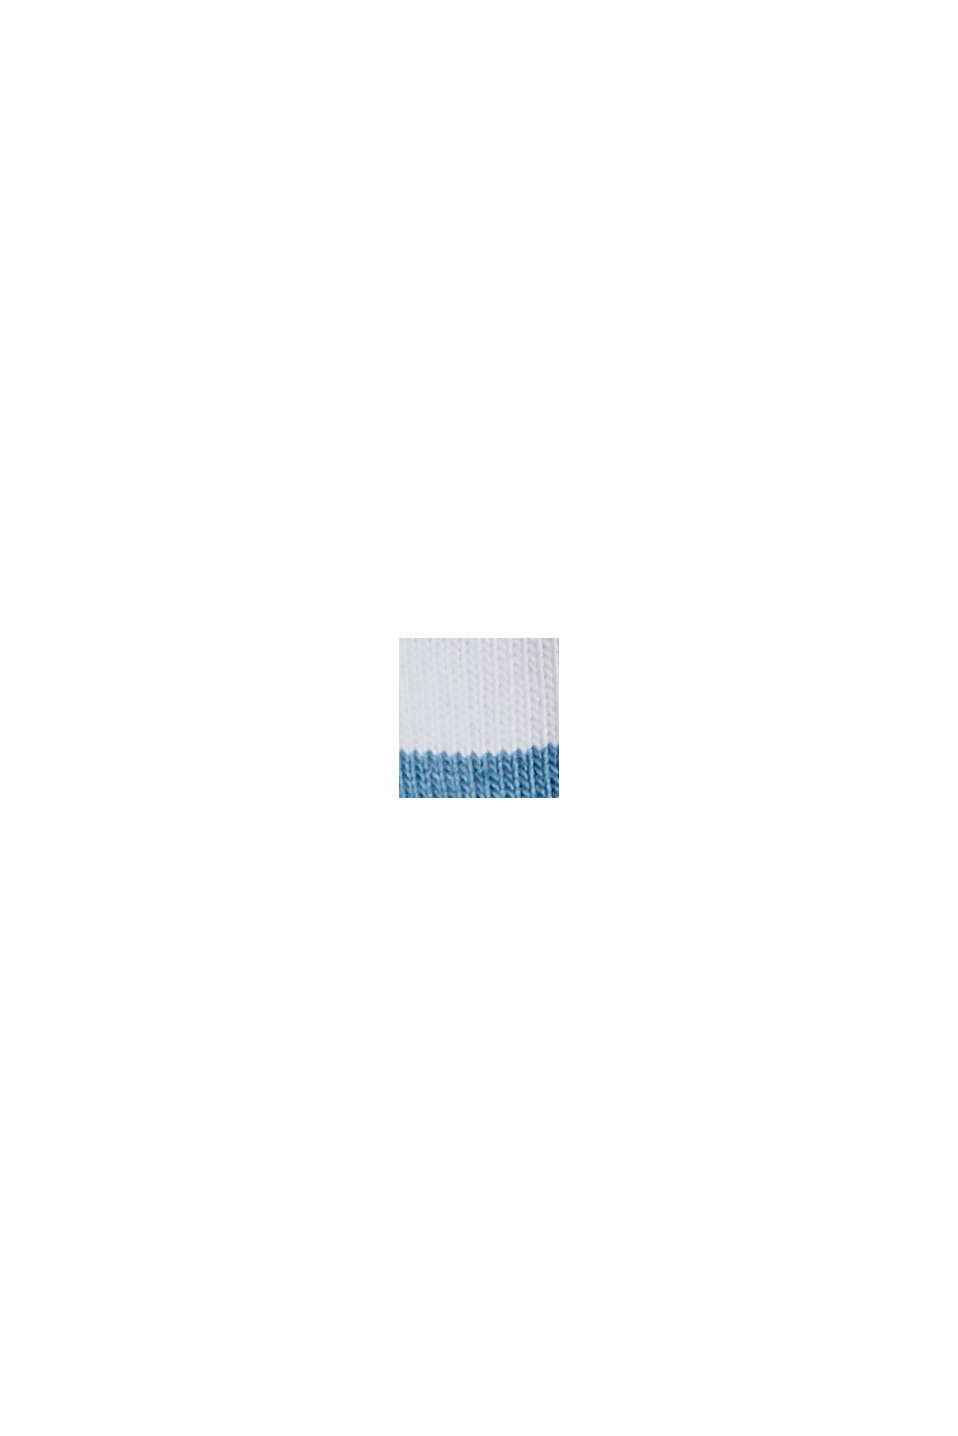 Maglia a maniche lunghe in jersey con righe, cotone biologico, PETROL BLUE, swatch